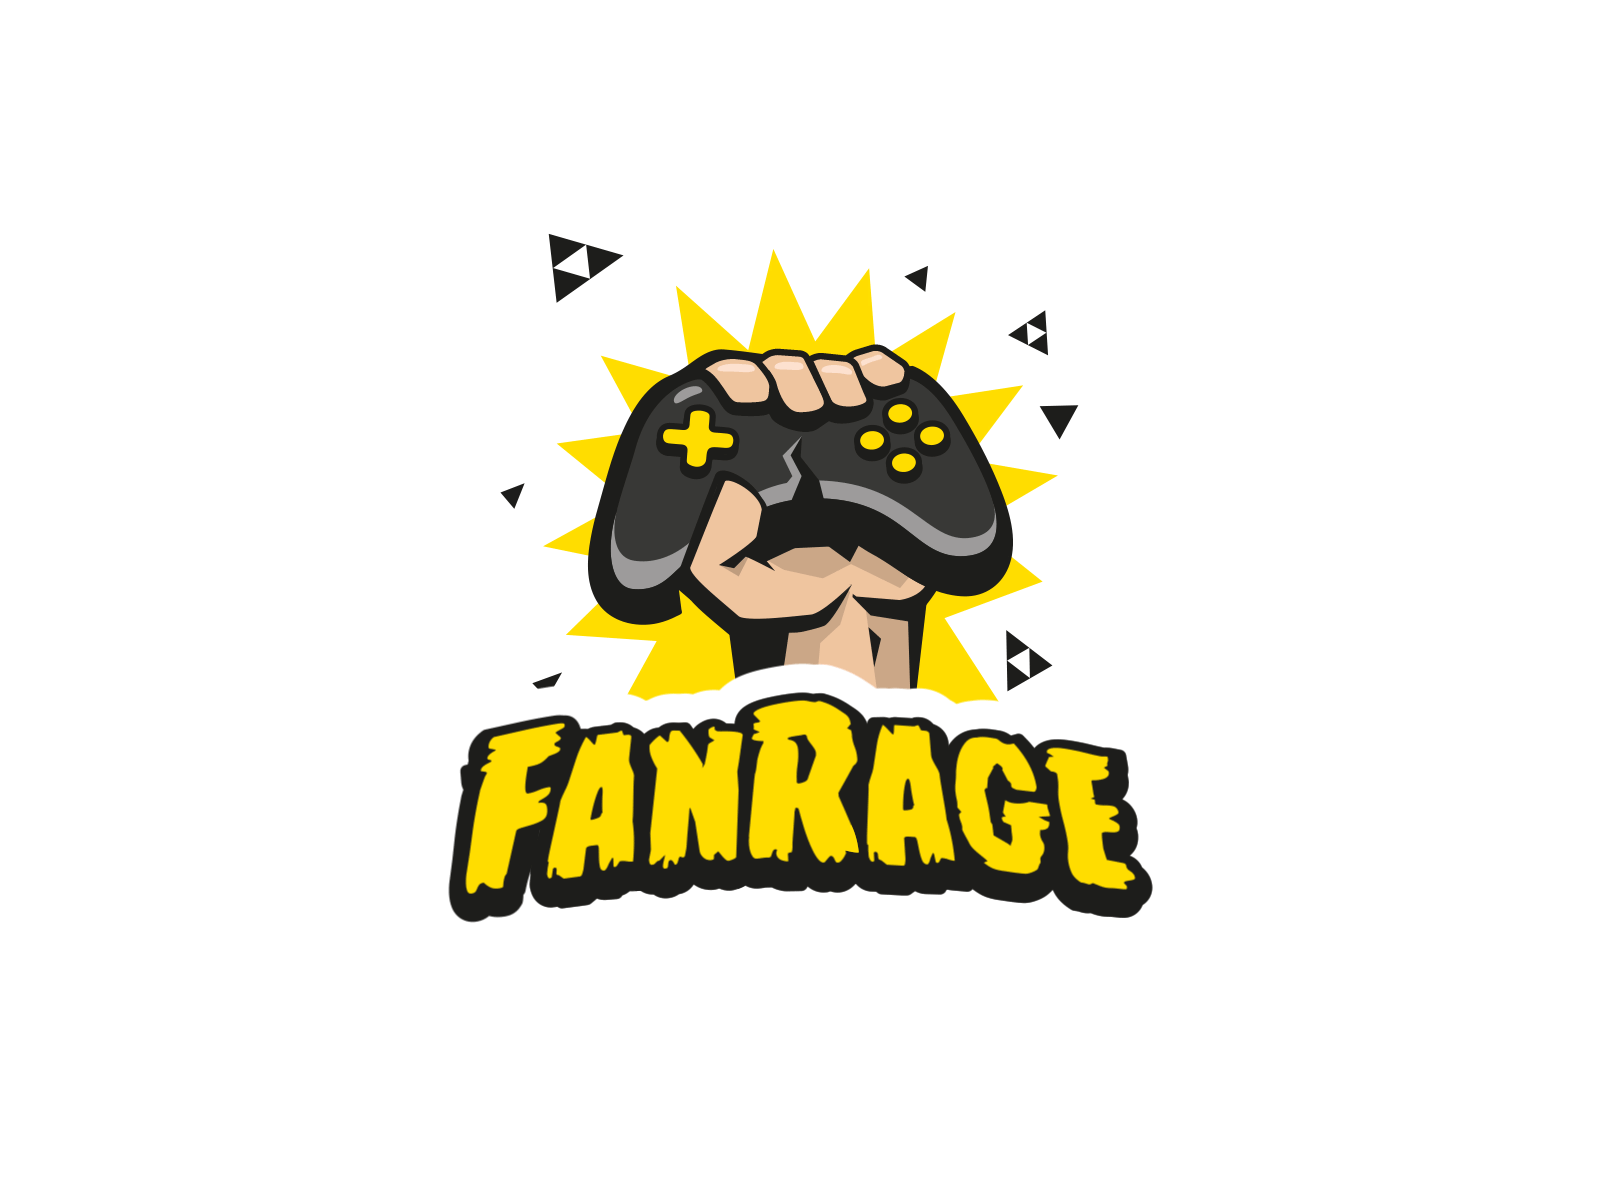 Fanrage